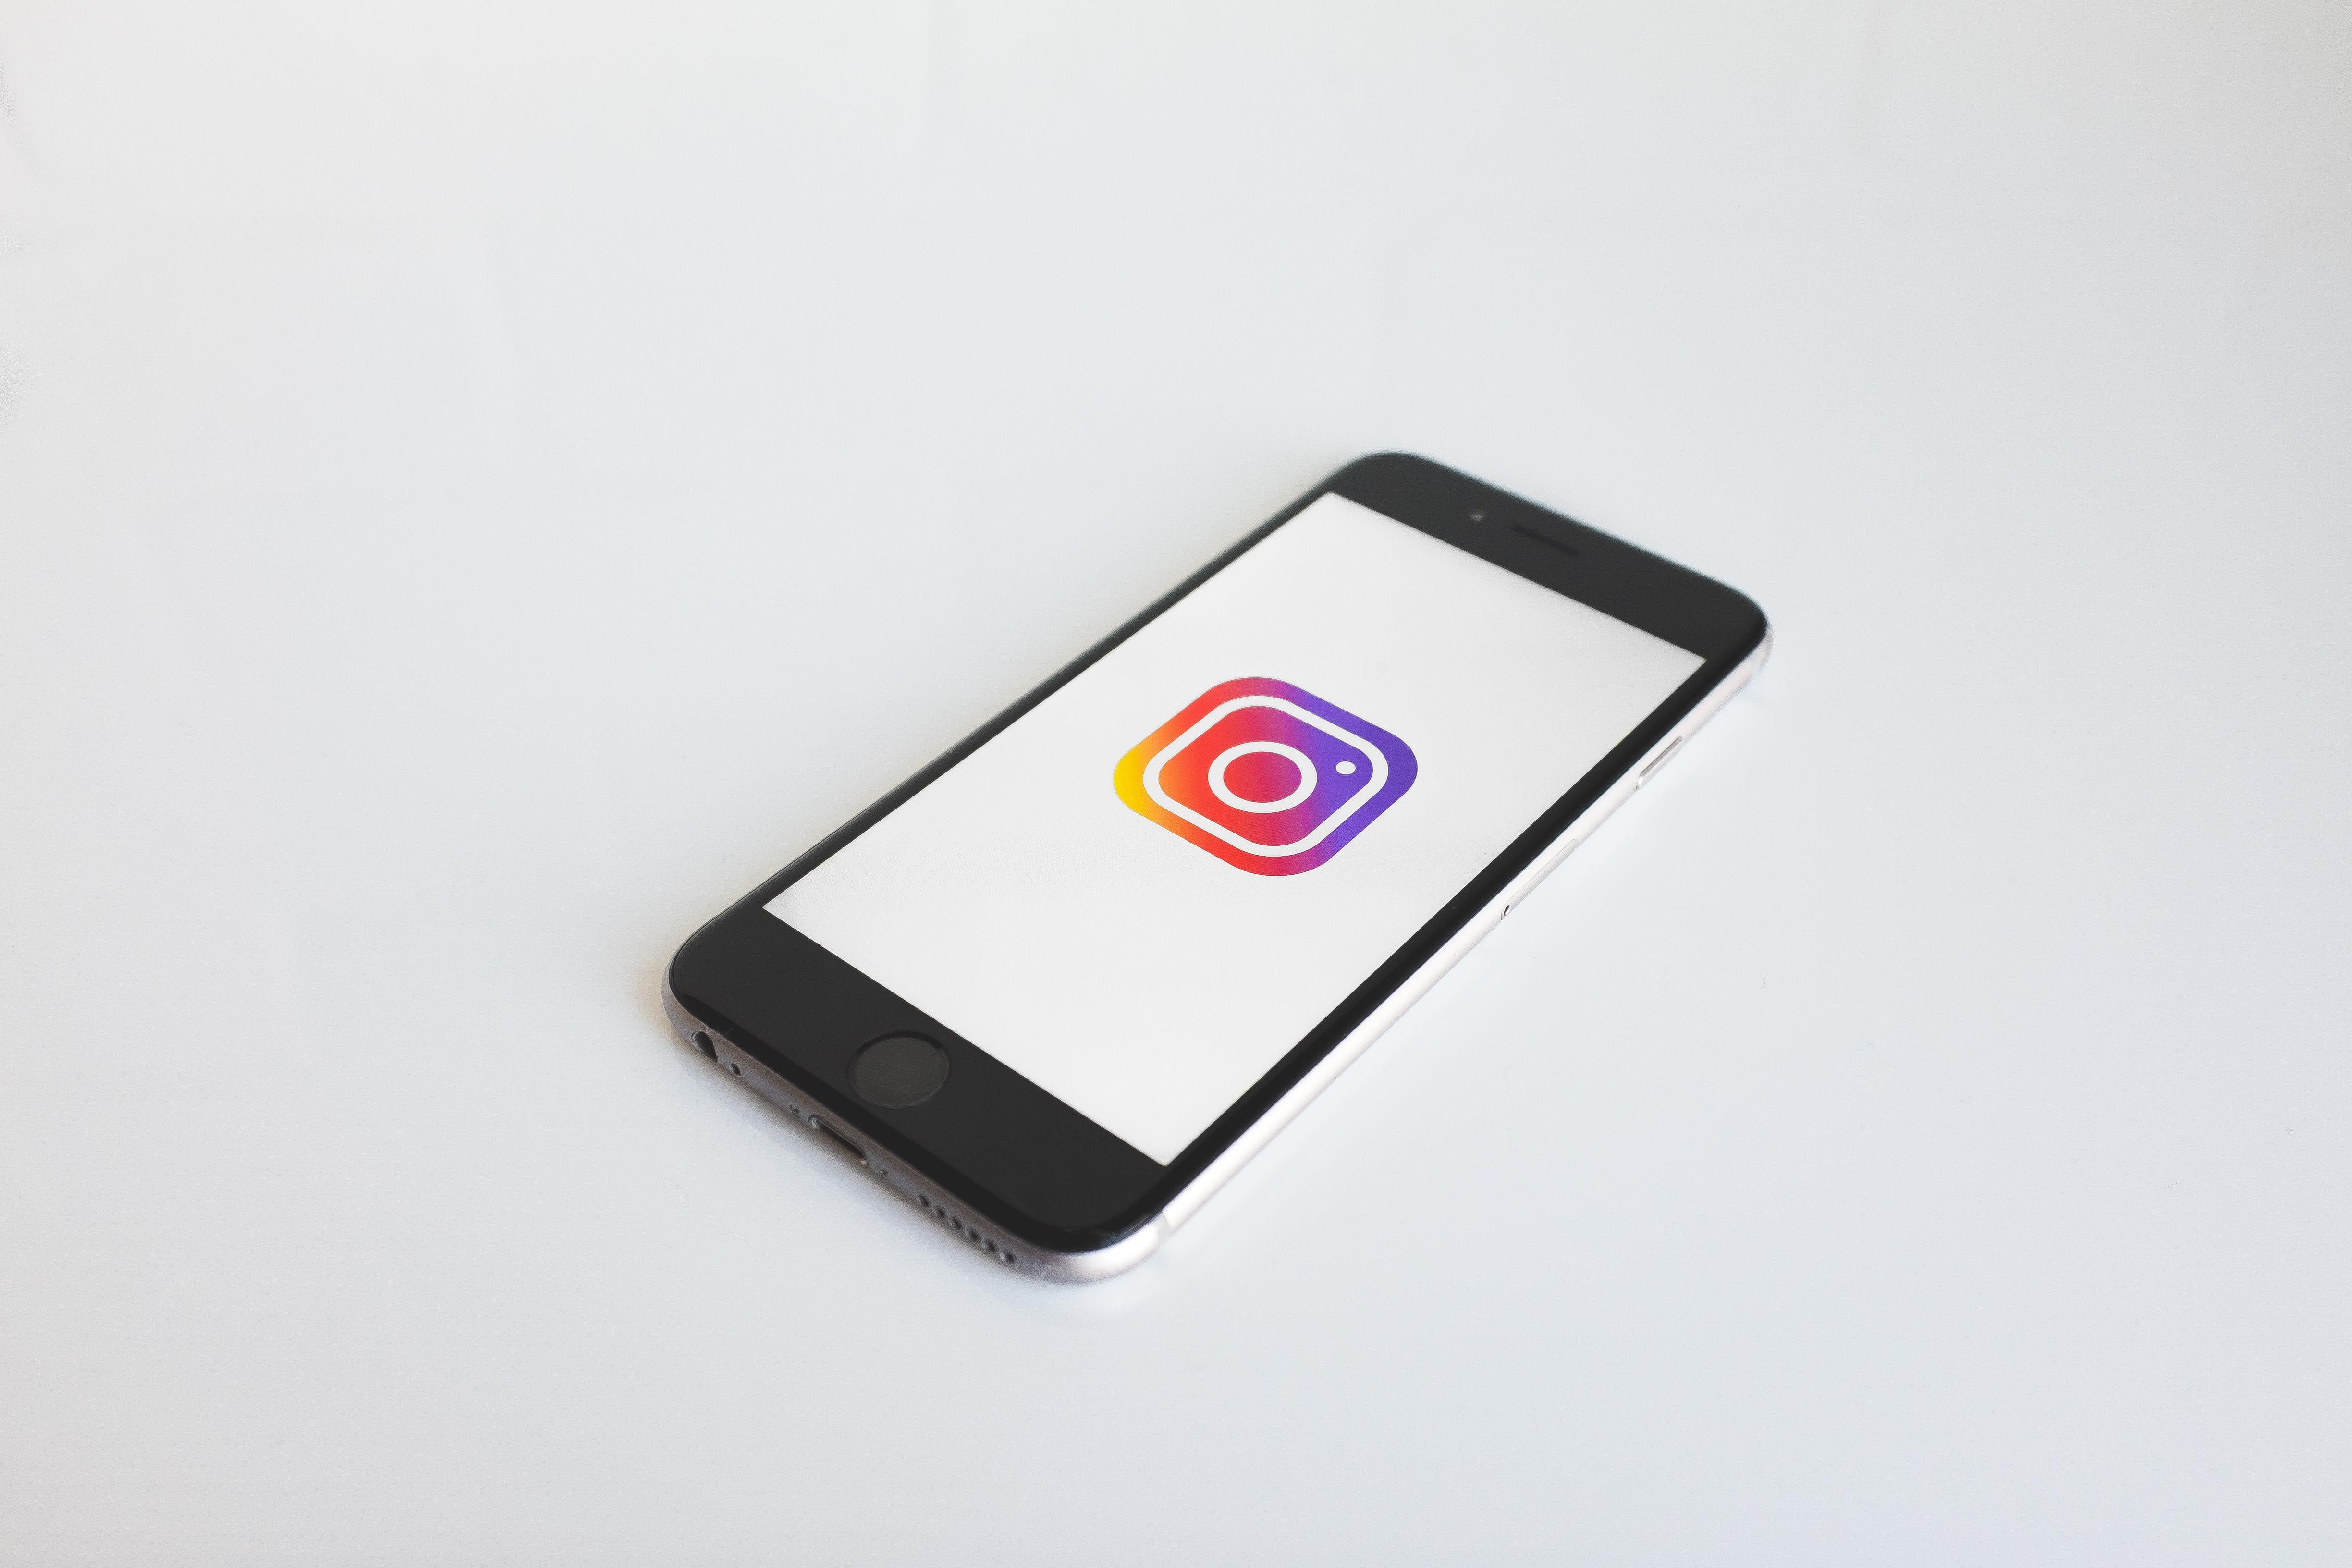 Az Instagram applikációja megnyitva egy iPhone-on egy fehér felületen